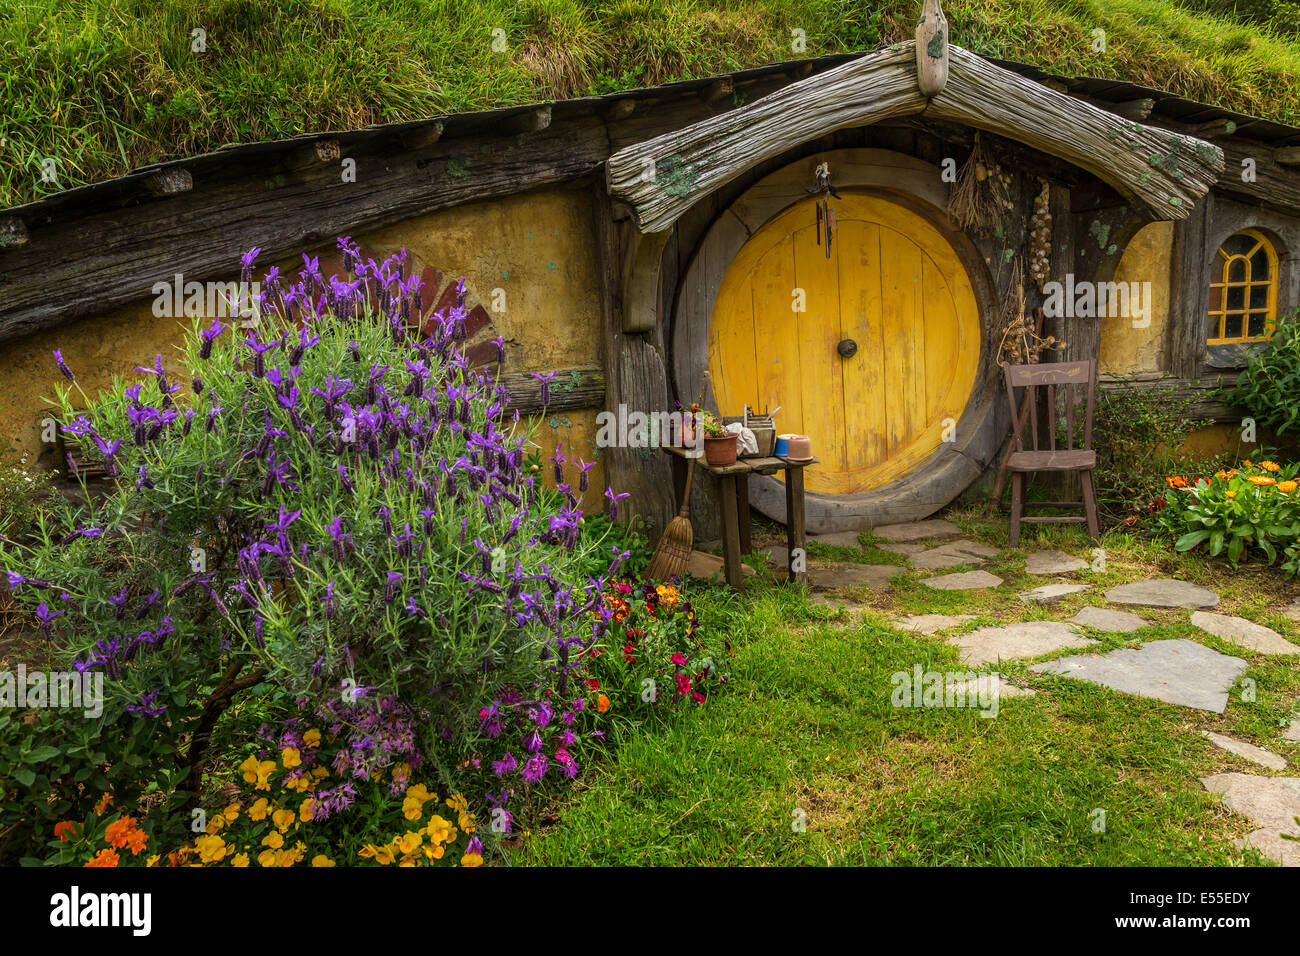 Hobbit-foro in Hobbiton, ubicazione del Signore degli Anelli e Lo Hobbit trilogia cinematografica, Hinuera, Matamata, Nuova Zelanda Foto Stock